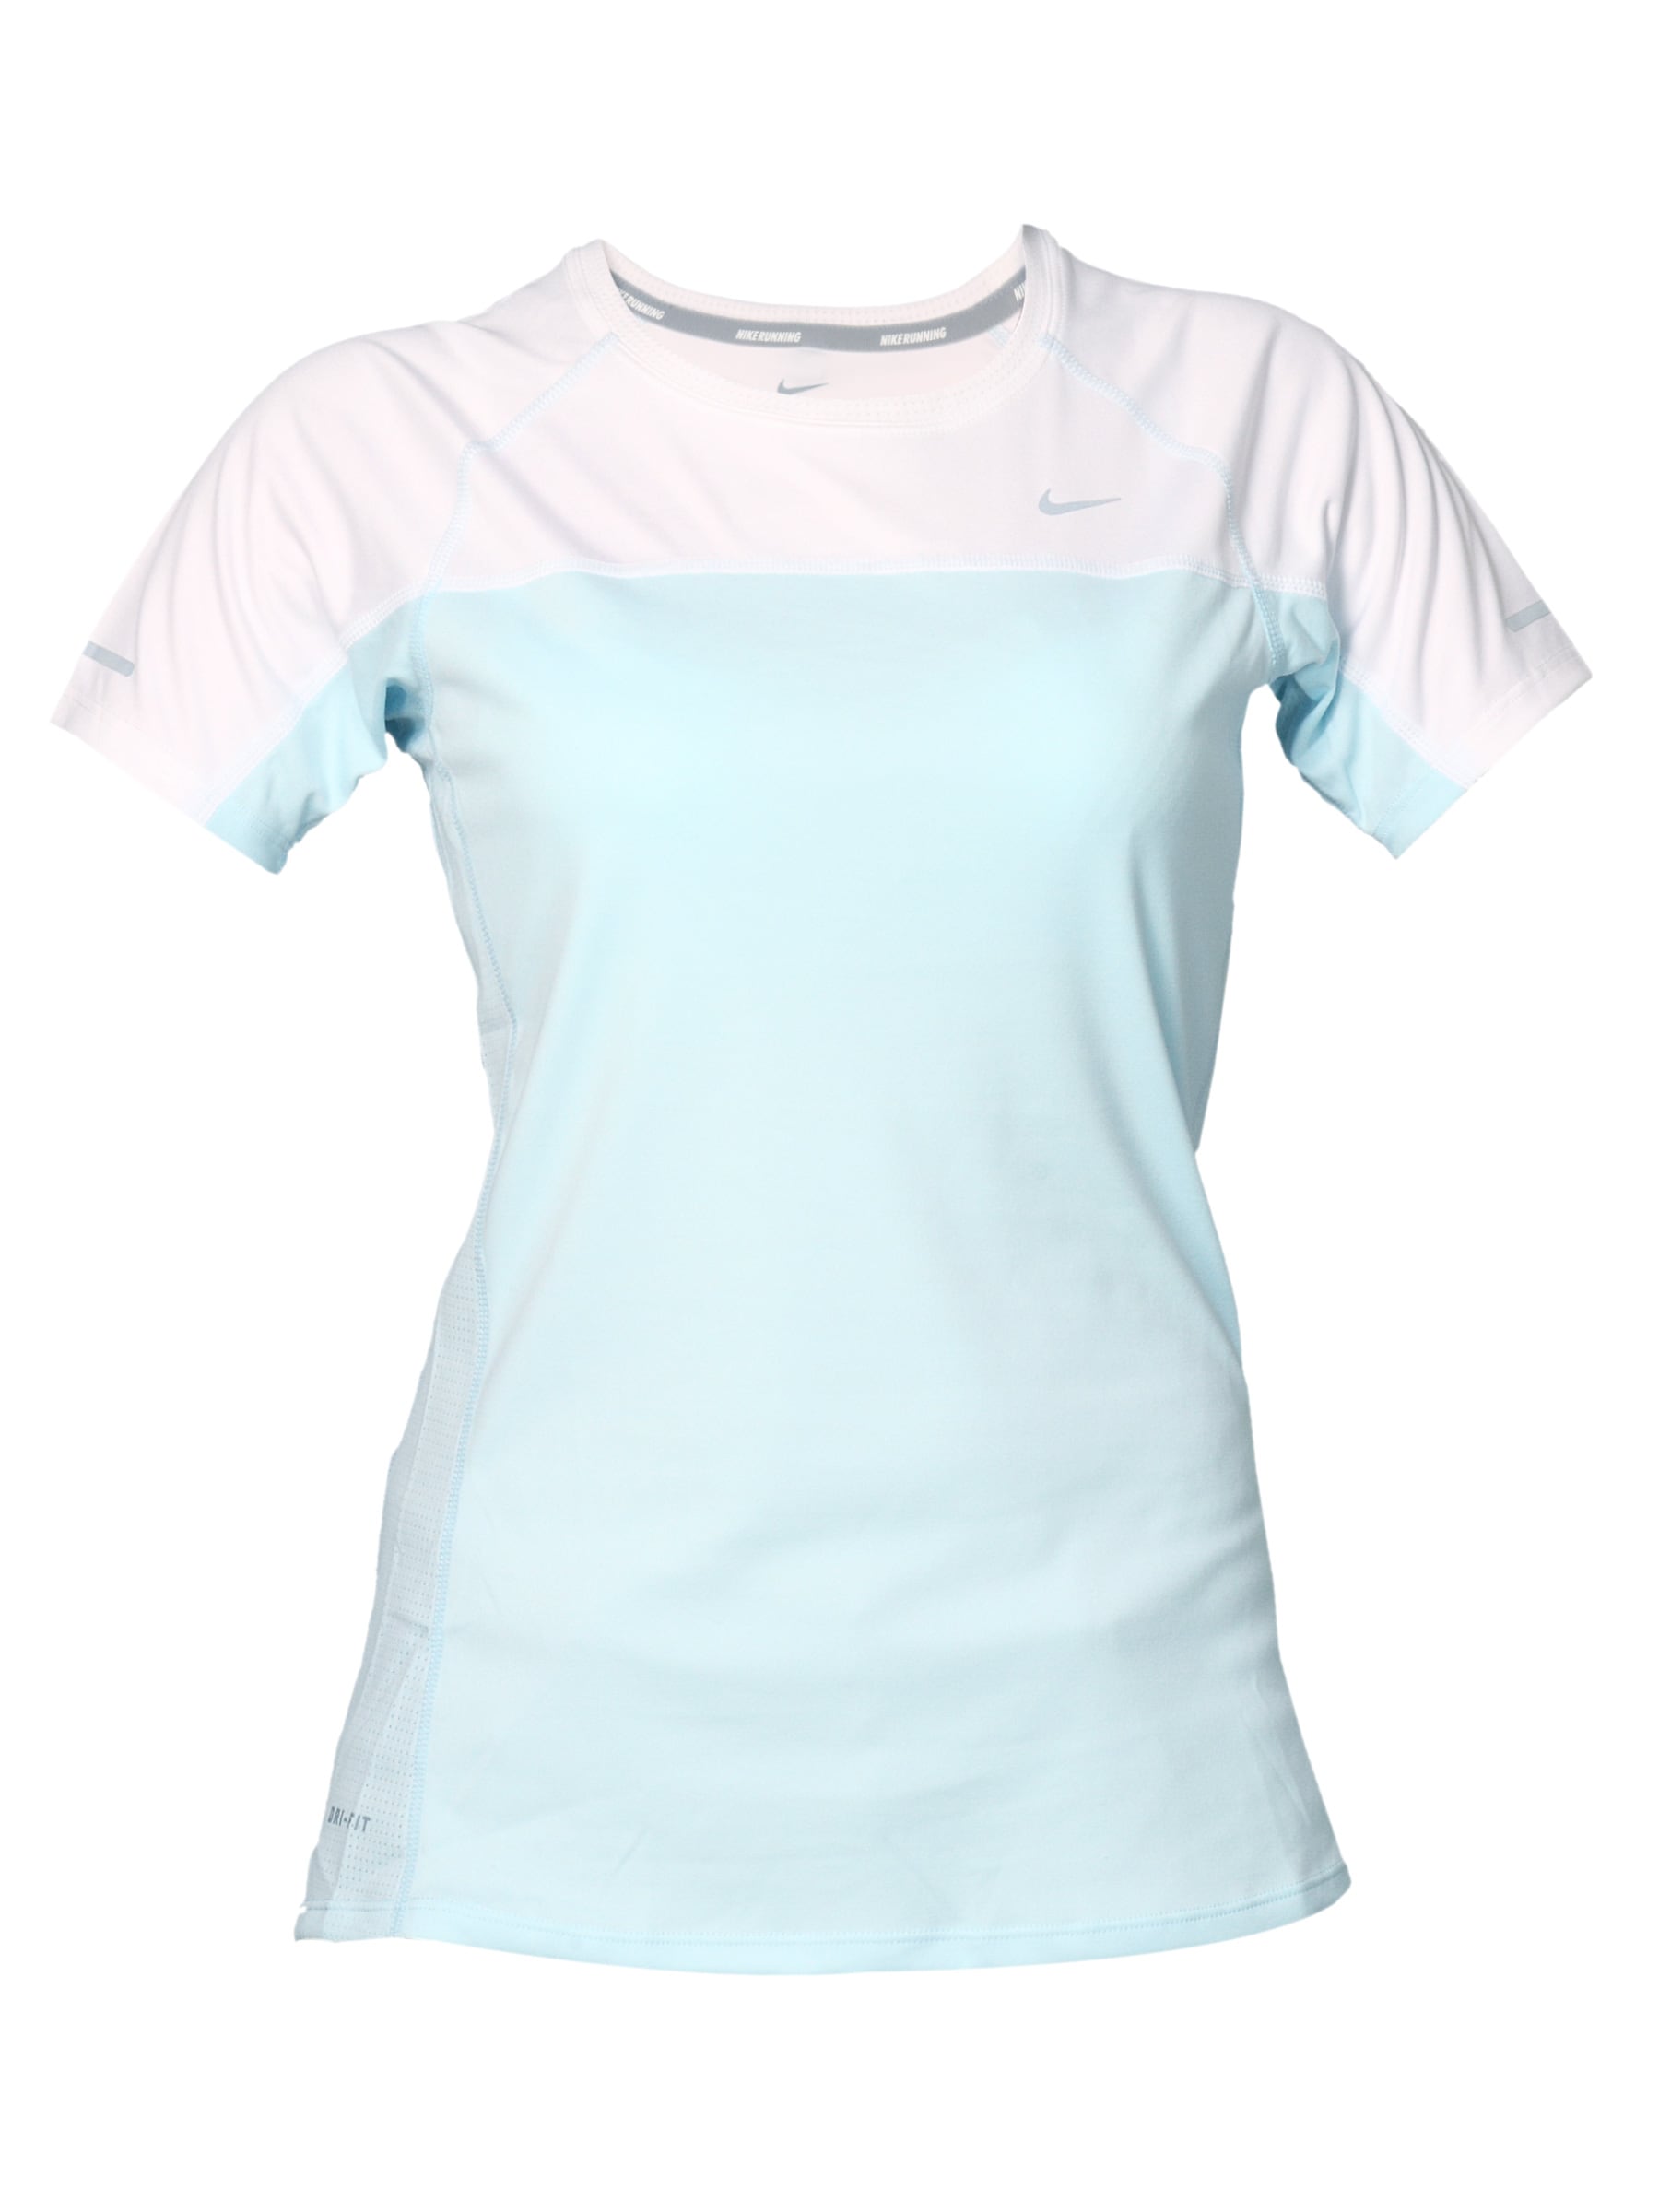 Nike Women's Miler White Blue T-shirt